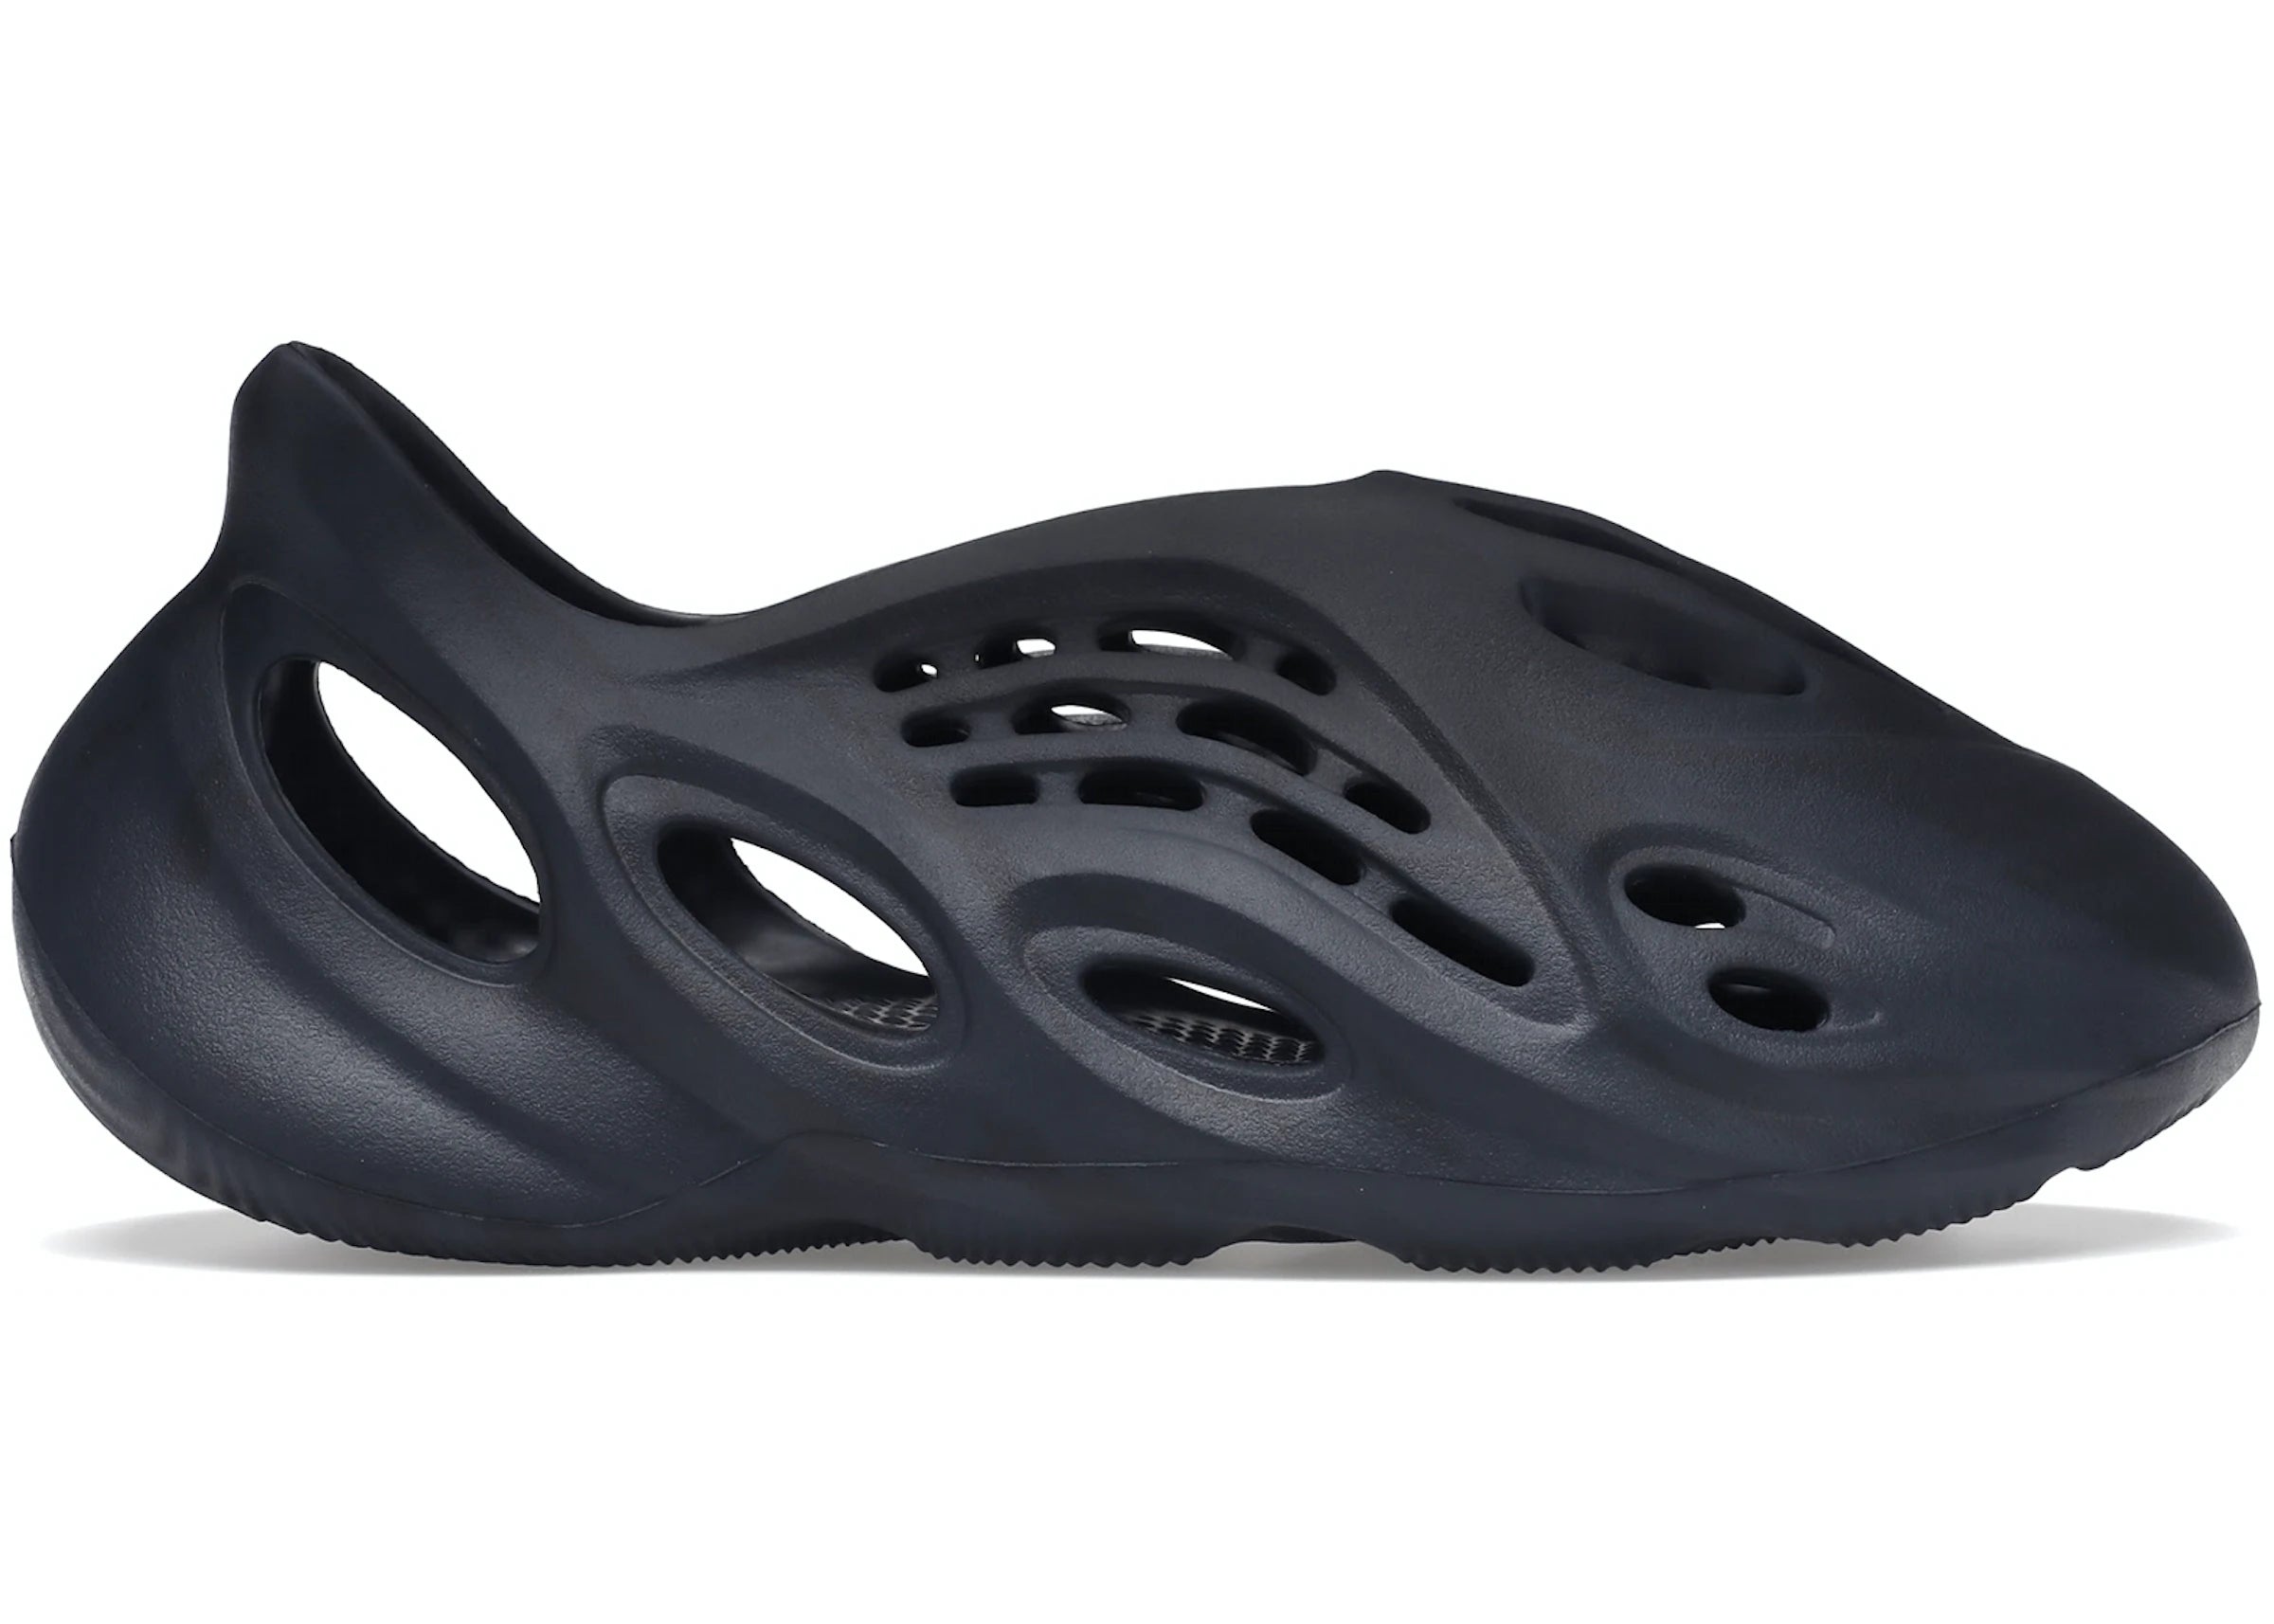 Size 13 - adidas Yeezy Foam Runner Stone Sage